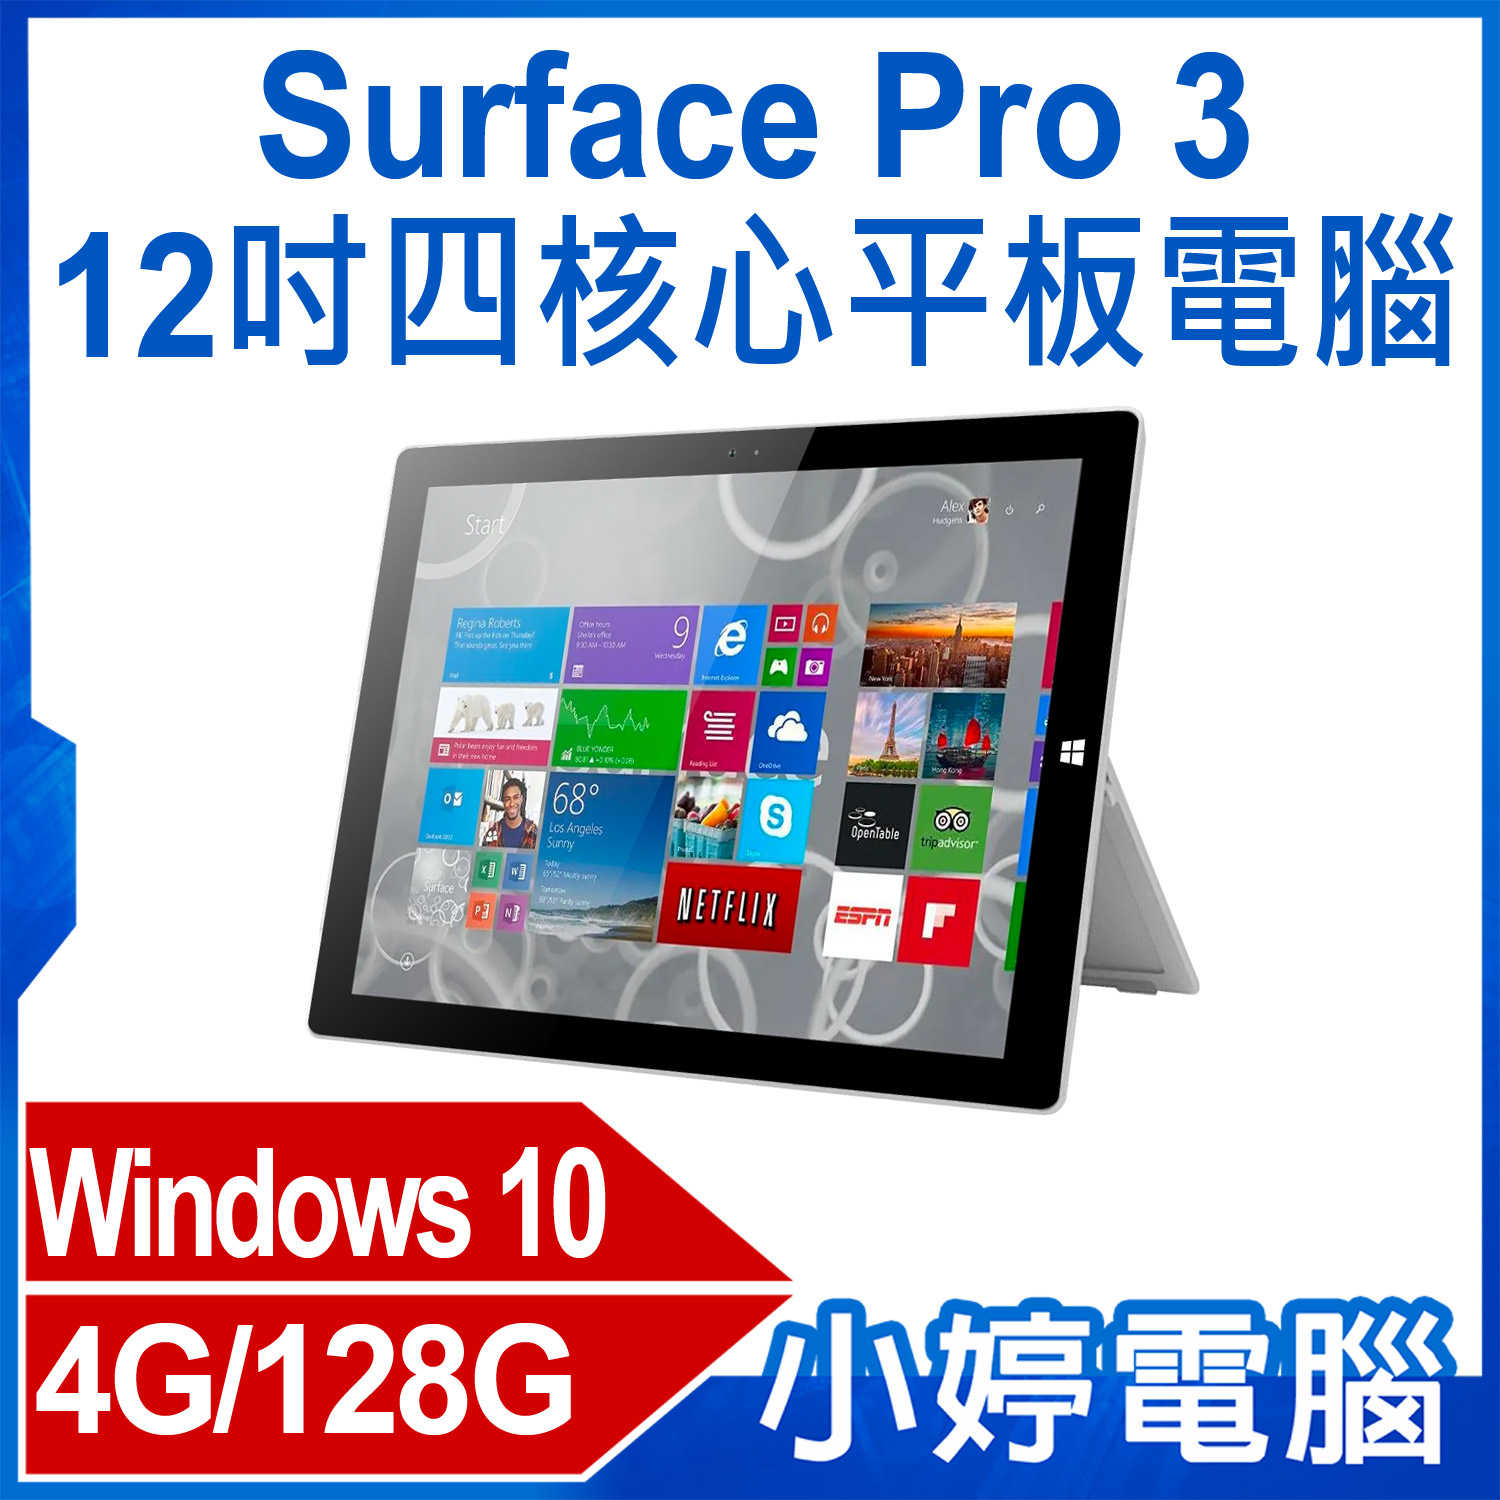 【小婷電腦】福利品 Surface Pro 3 12吋四核心平板電腦 Intel處理器 Win10 4G/128G